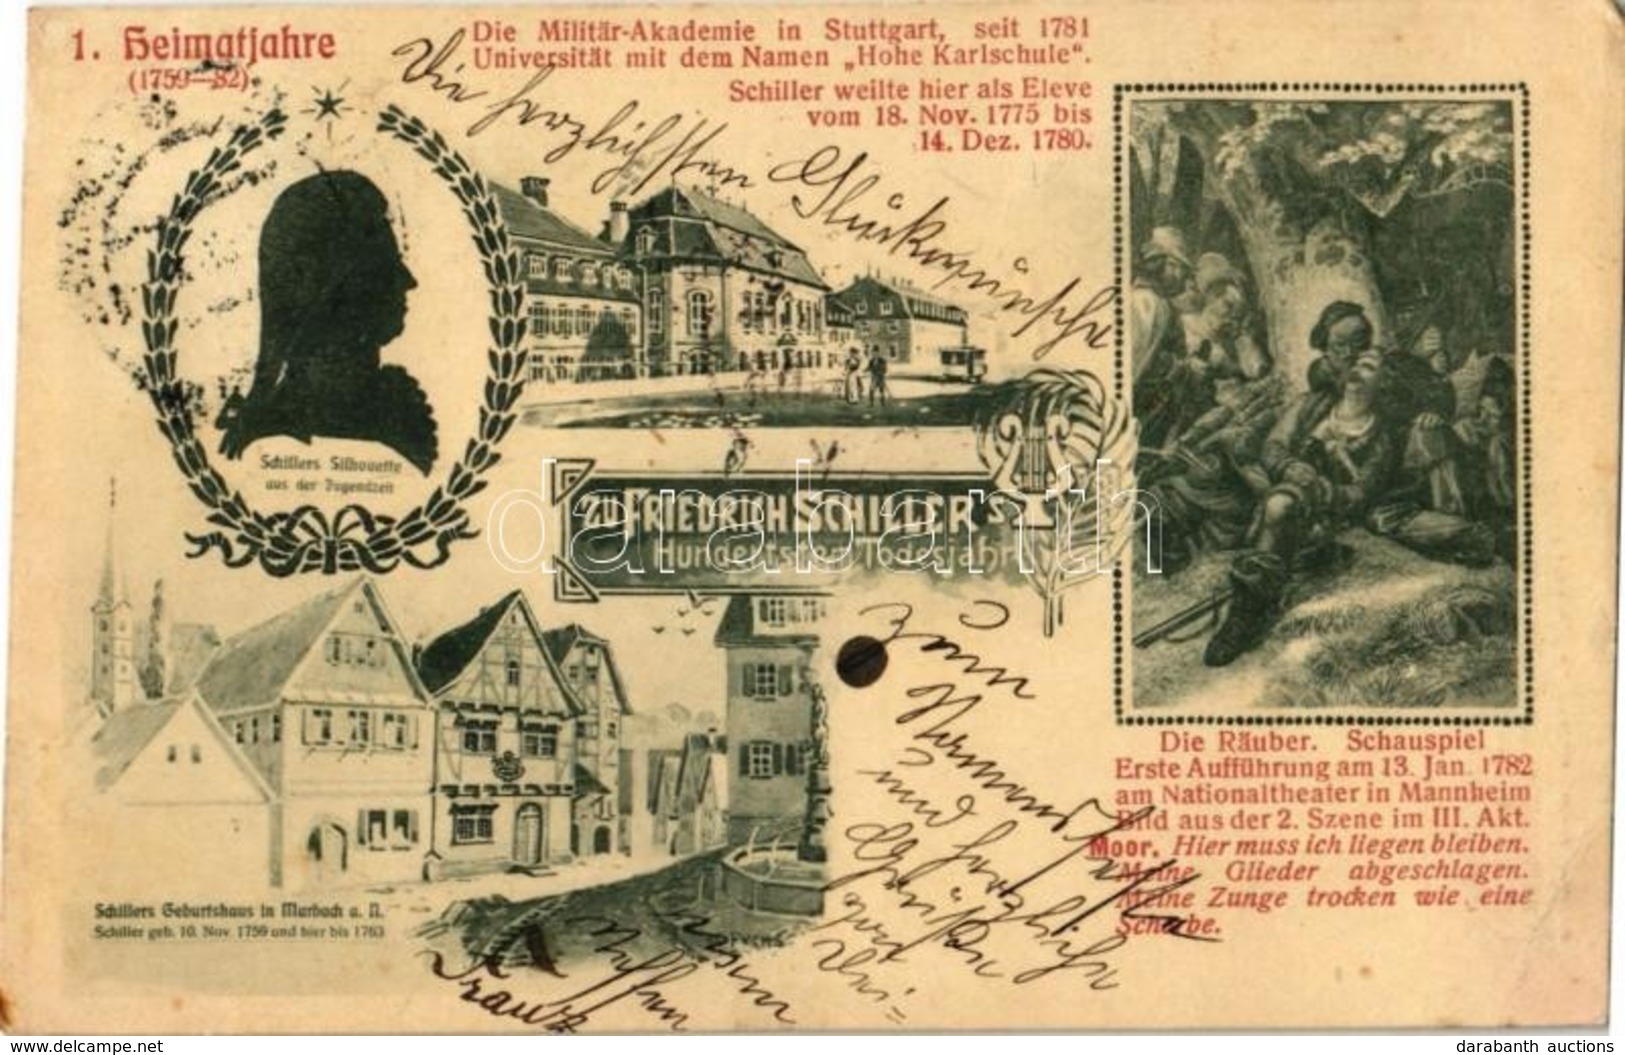 T2/T3 1905 Zu Friedrich Schiller's Hundertsten Todesjahr. 1. Heimatjahre (1759-82), Die Militär-Akademie In Stuttgart, S - Ohne Zuordnung